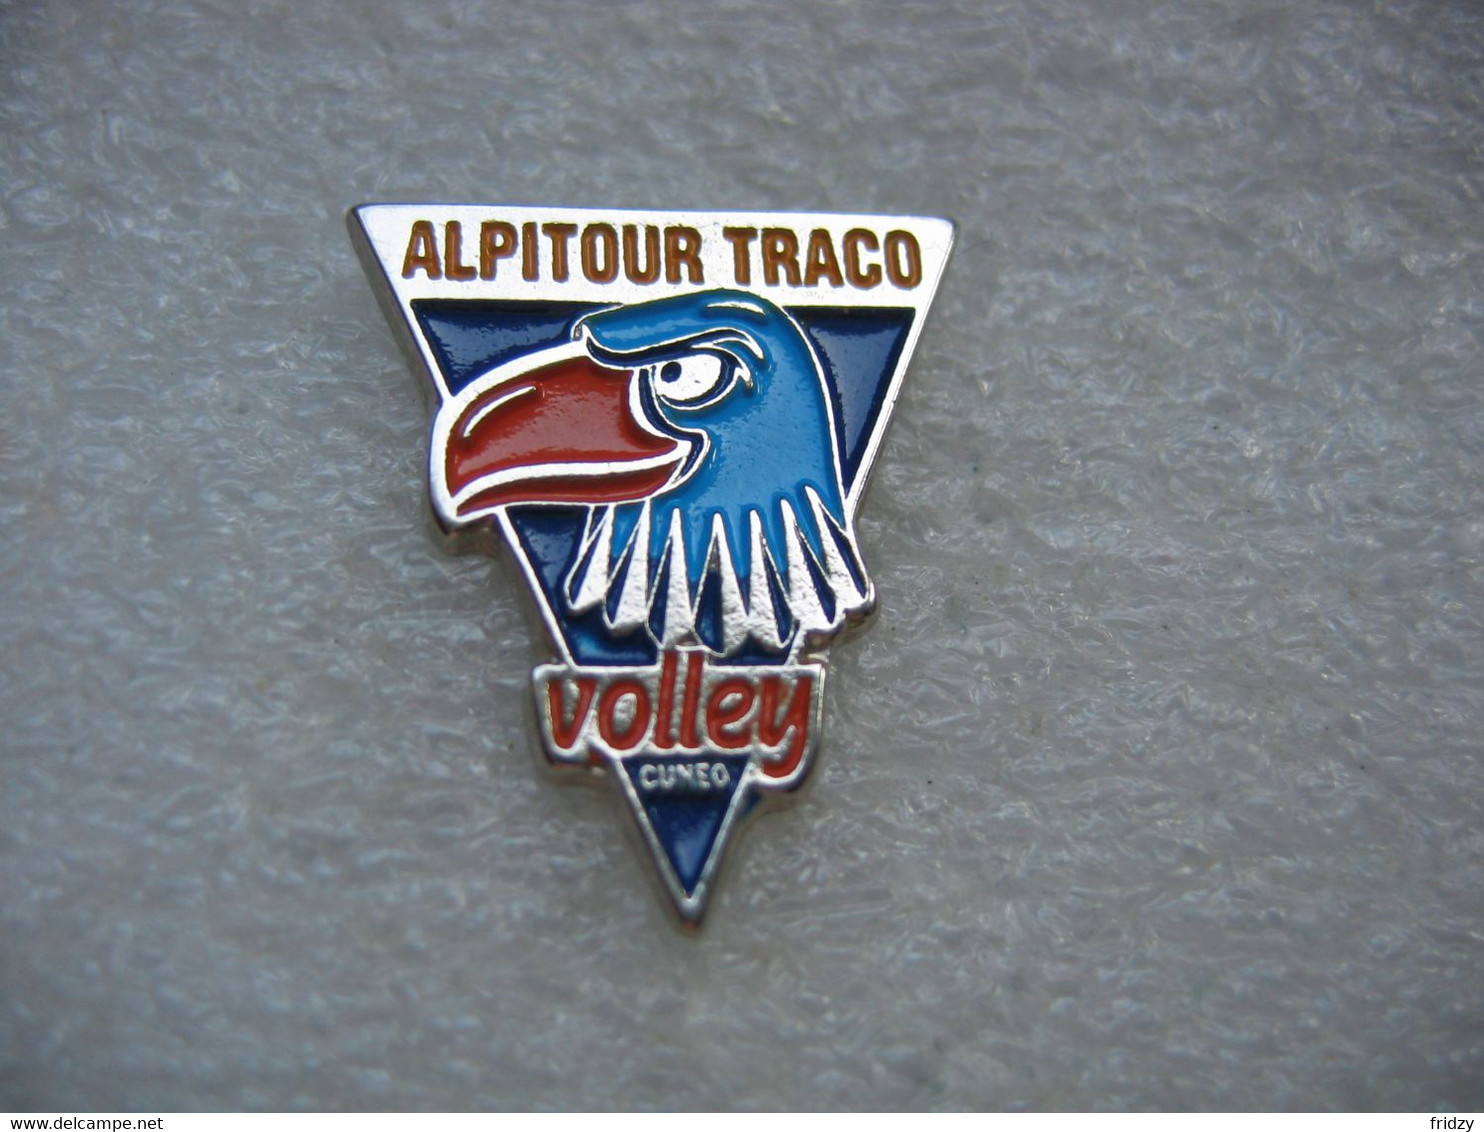 Pin's Du Club "Alpitour Traco Volley" De CUNEO En ITALIE - Volleyball